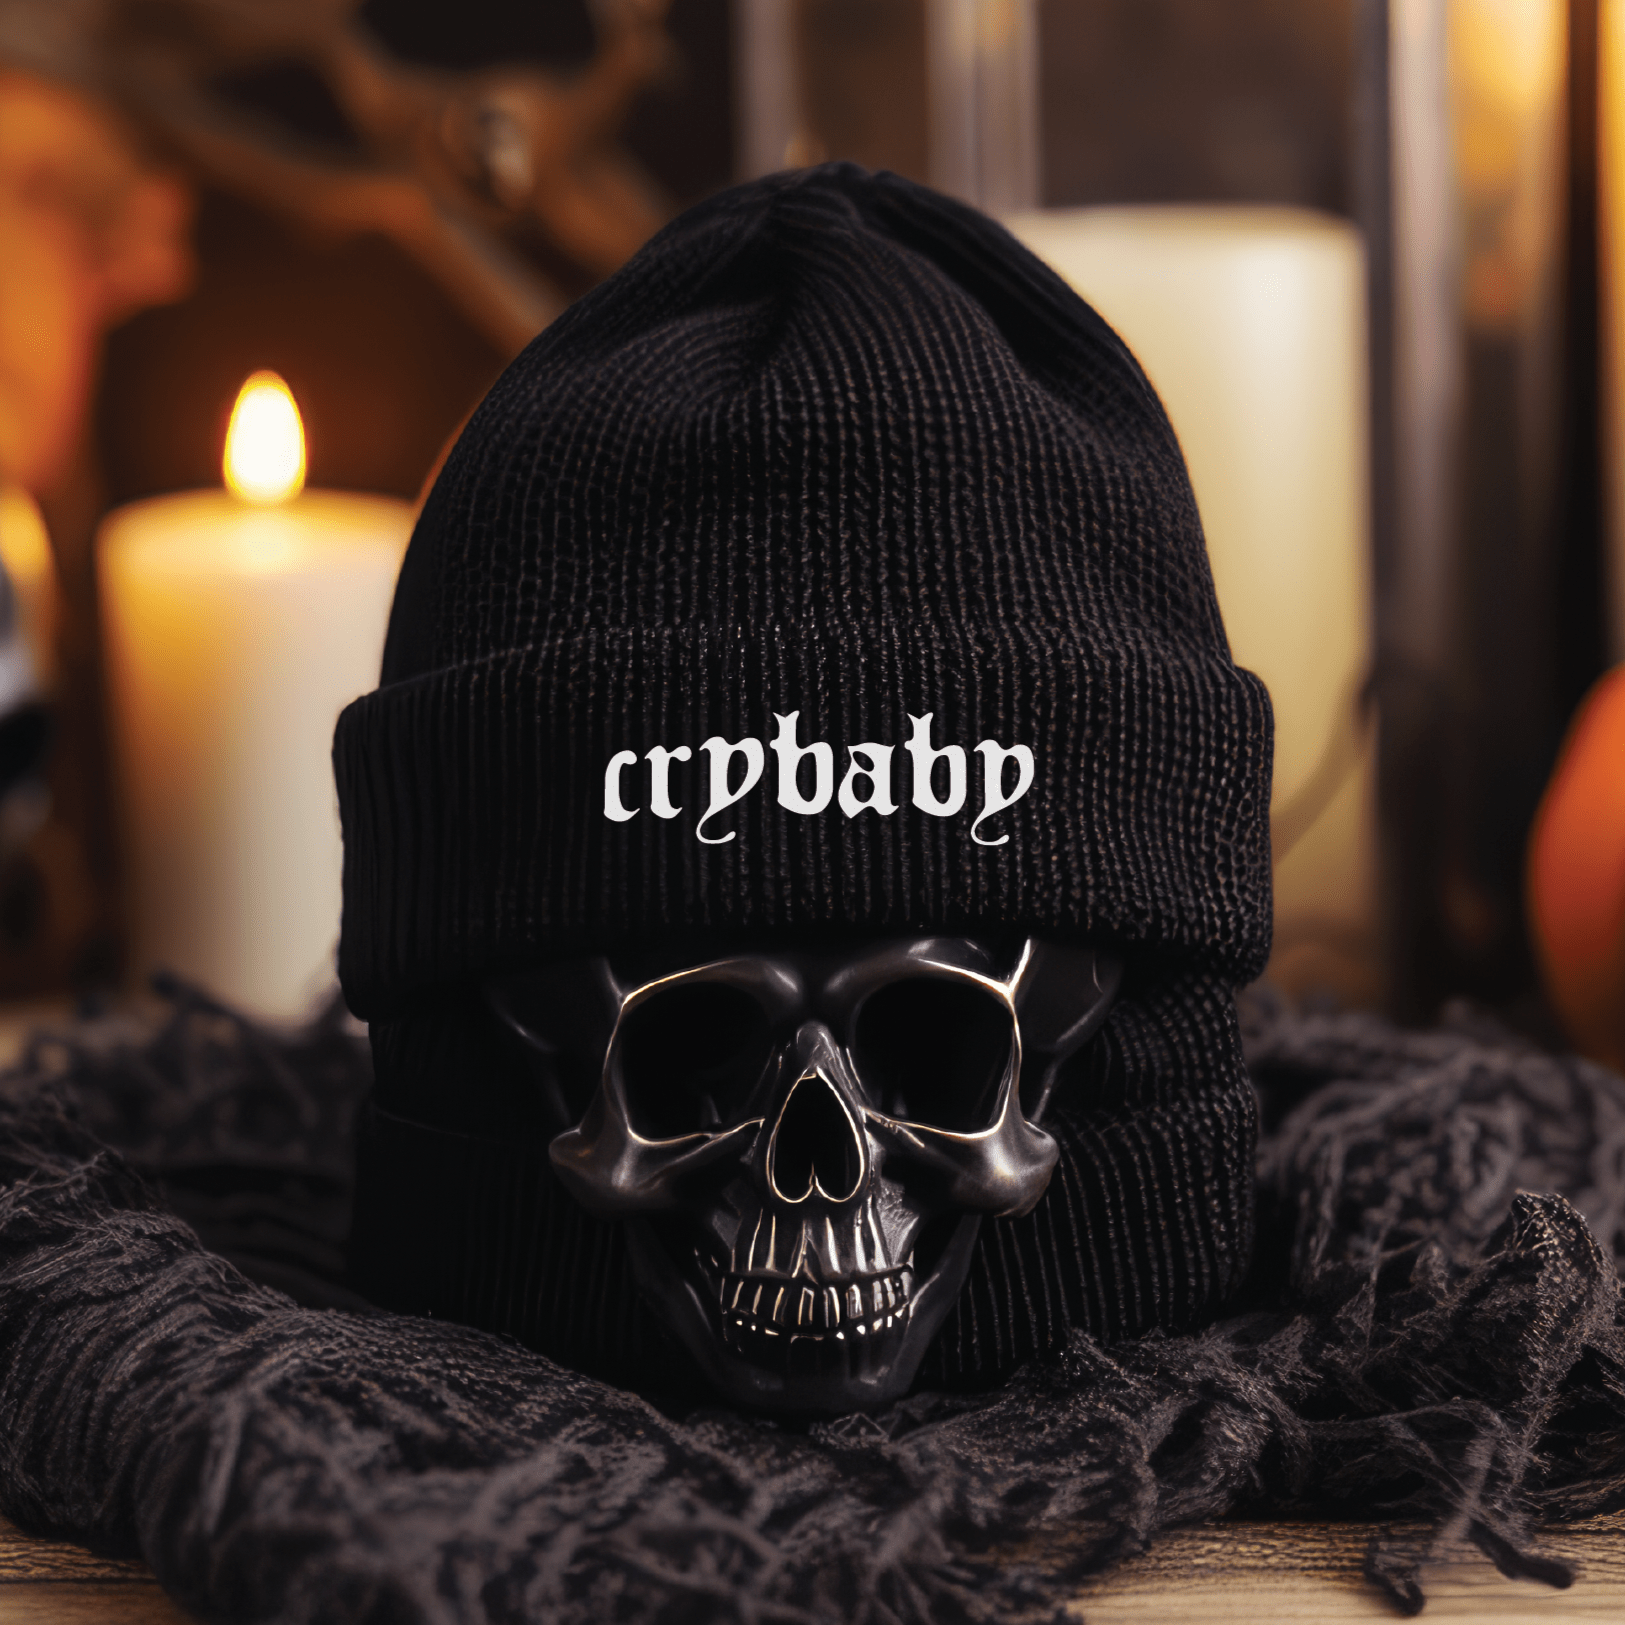 Crybaby Gothic Knit Beanie - Goth Cloth Co.3690994_8941